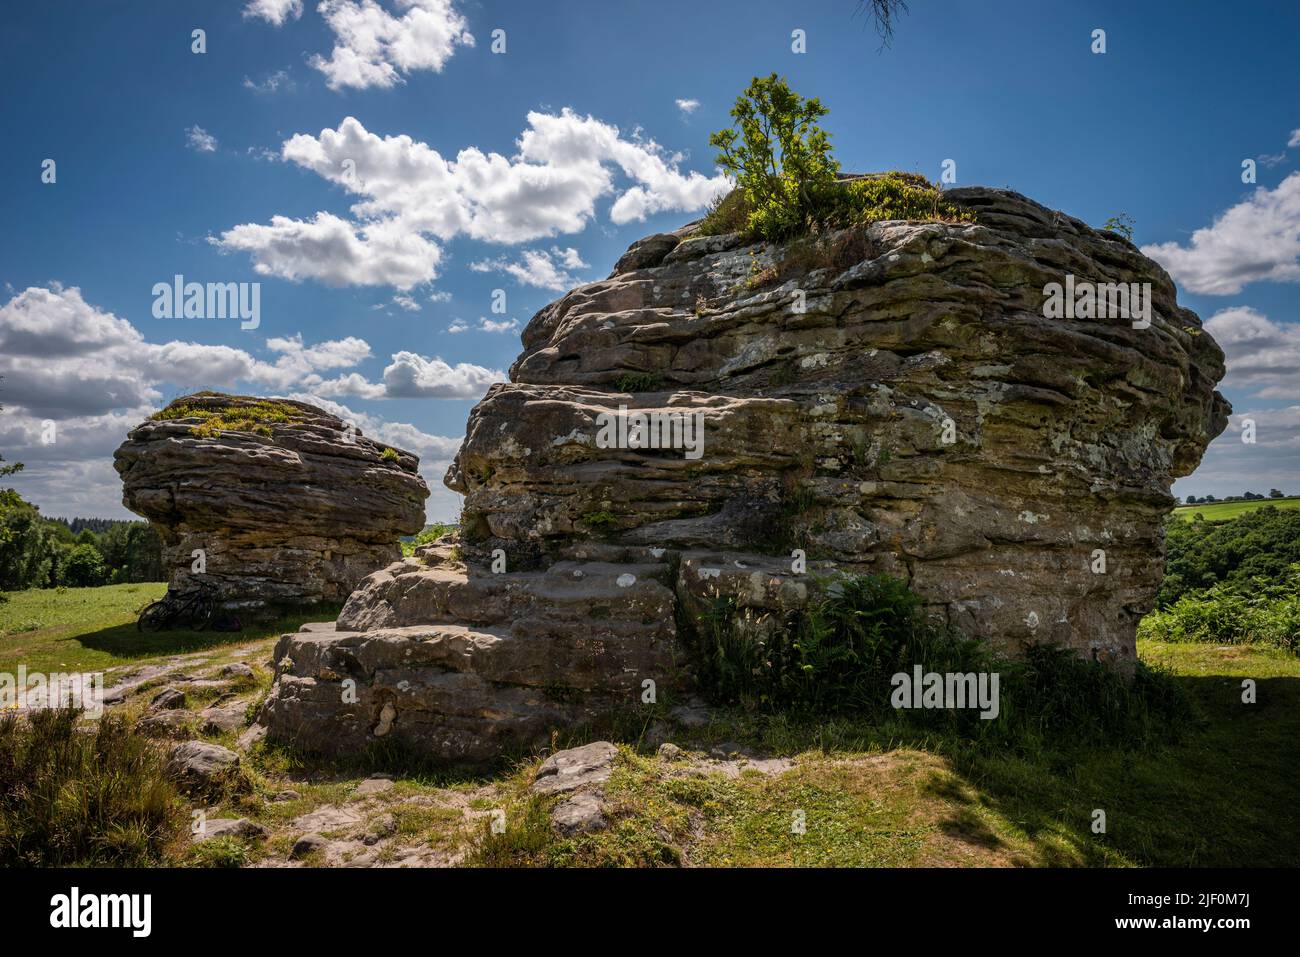 Le formazioni rocciose naturali di Bridestones create dall'erosione nella Foresta di Dalby, North Yorkshire, Regno Unito Foto Stock